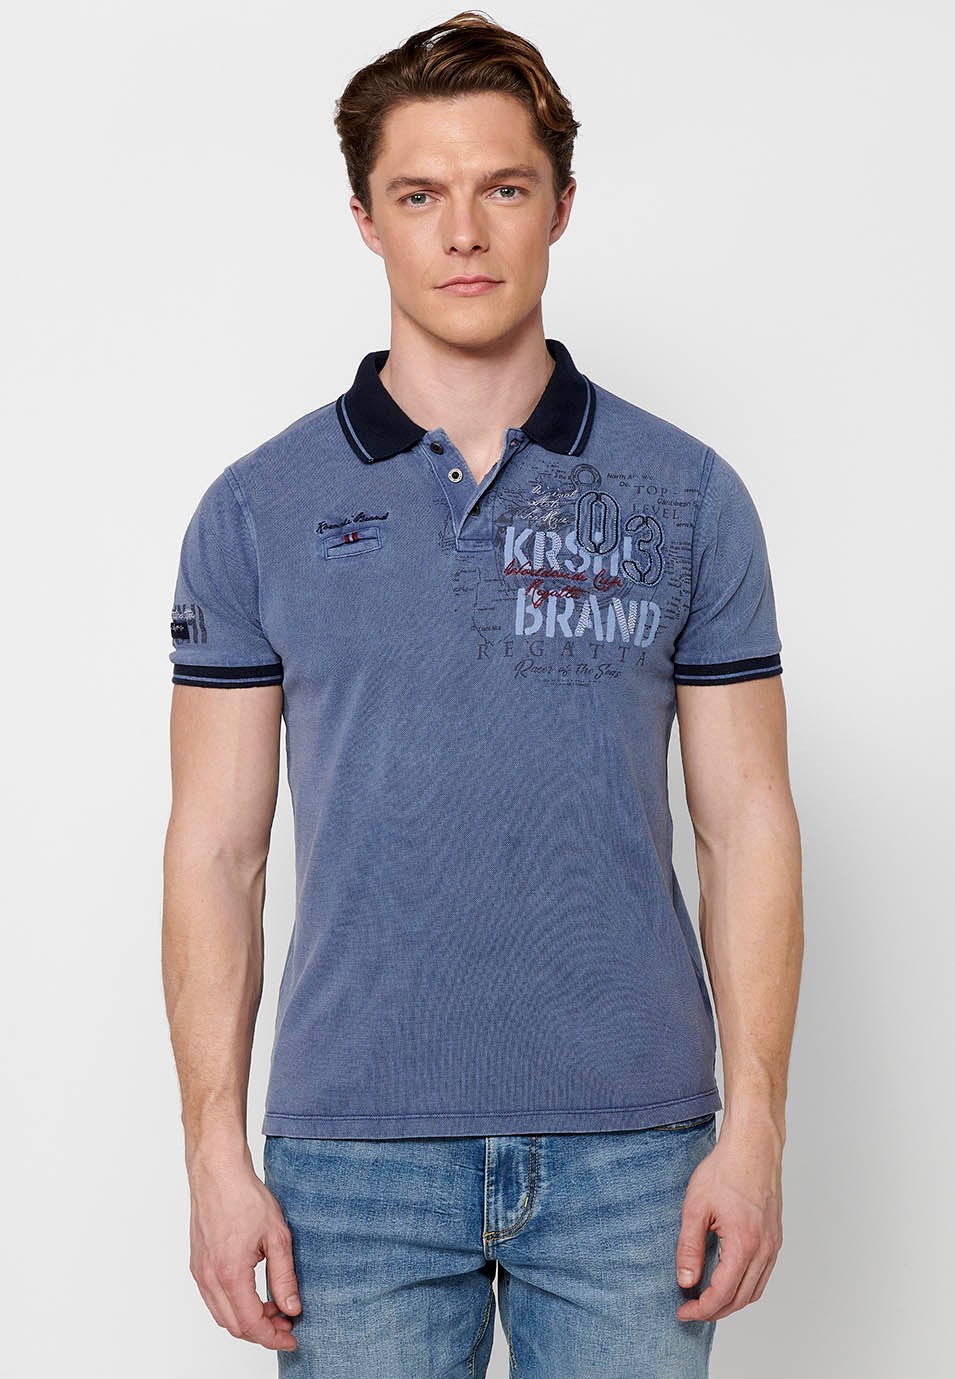 Kurzarm-Poloshirt aus Baumwolle, Hemdkragen mit Knöpfen, blaue Farbe für Herren